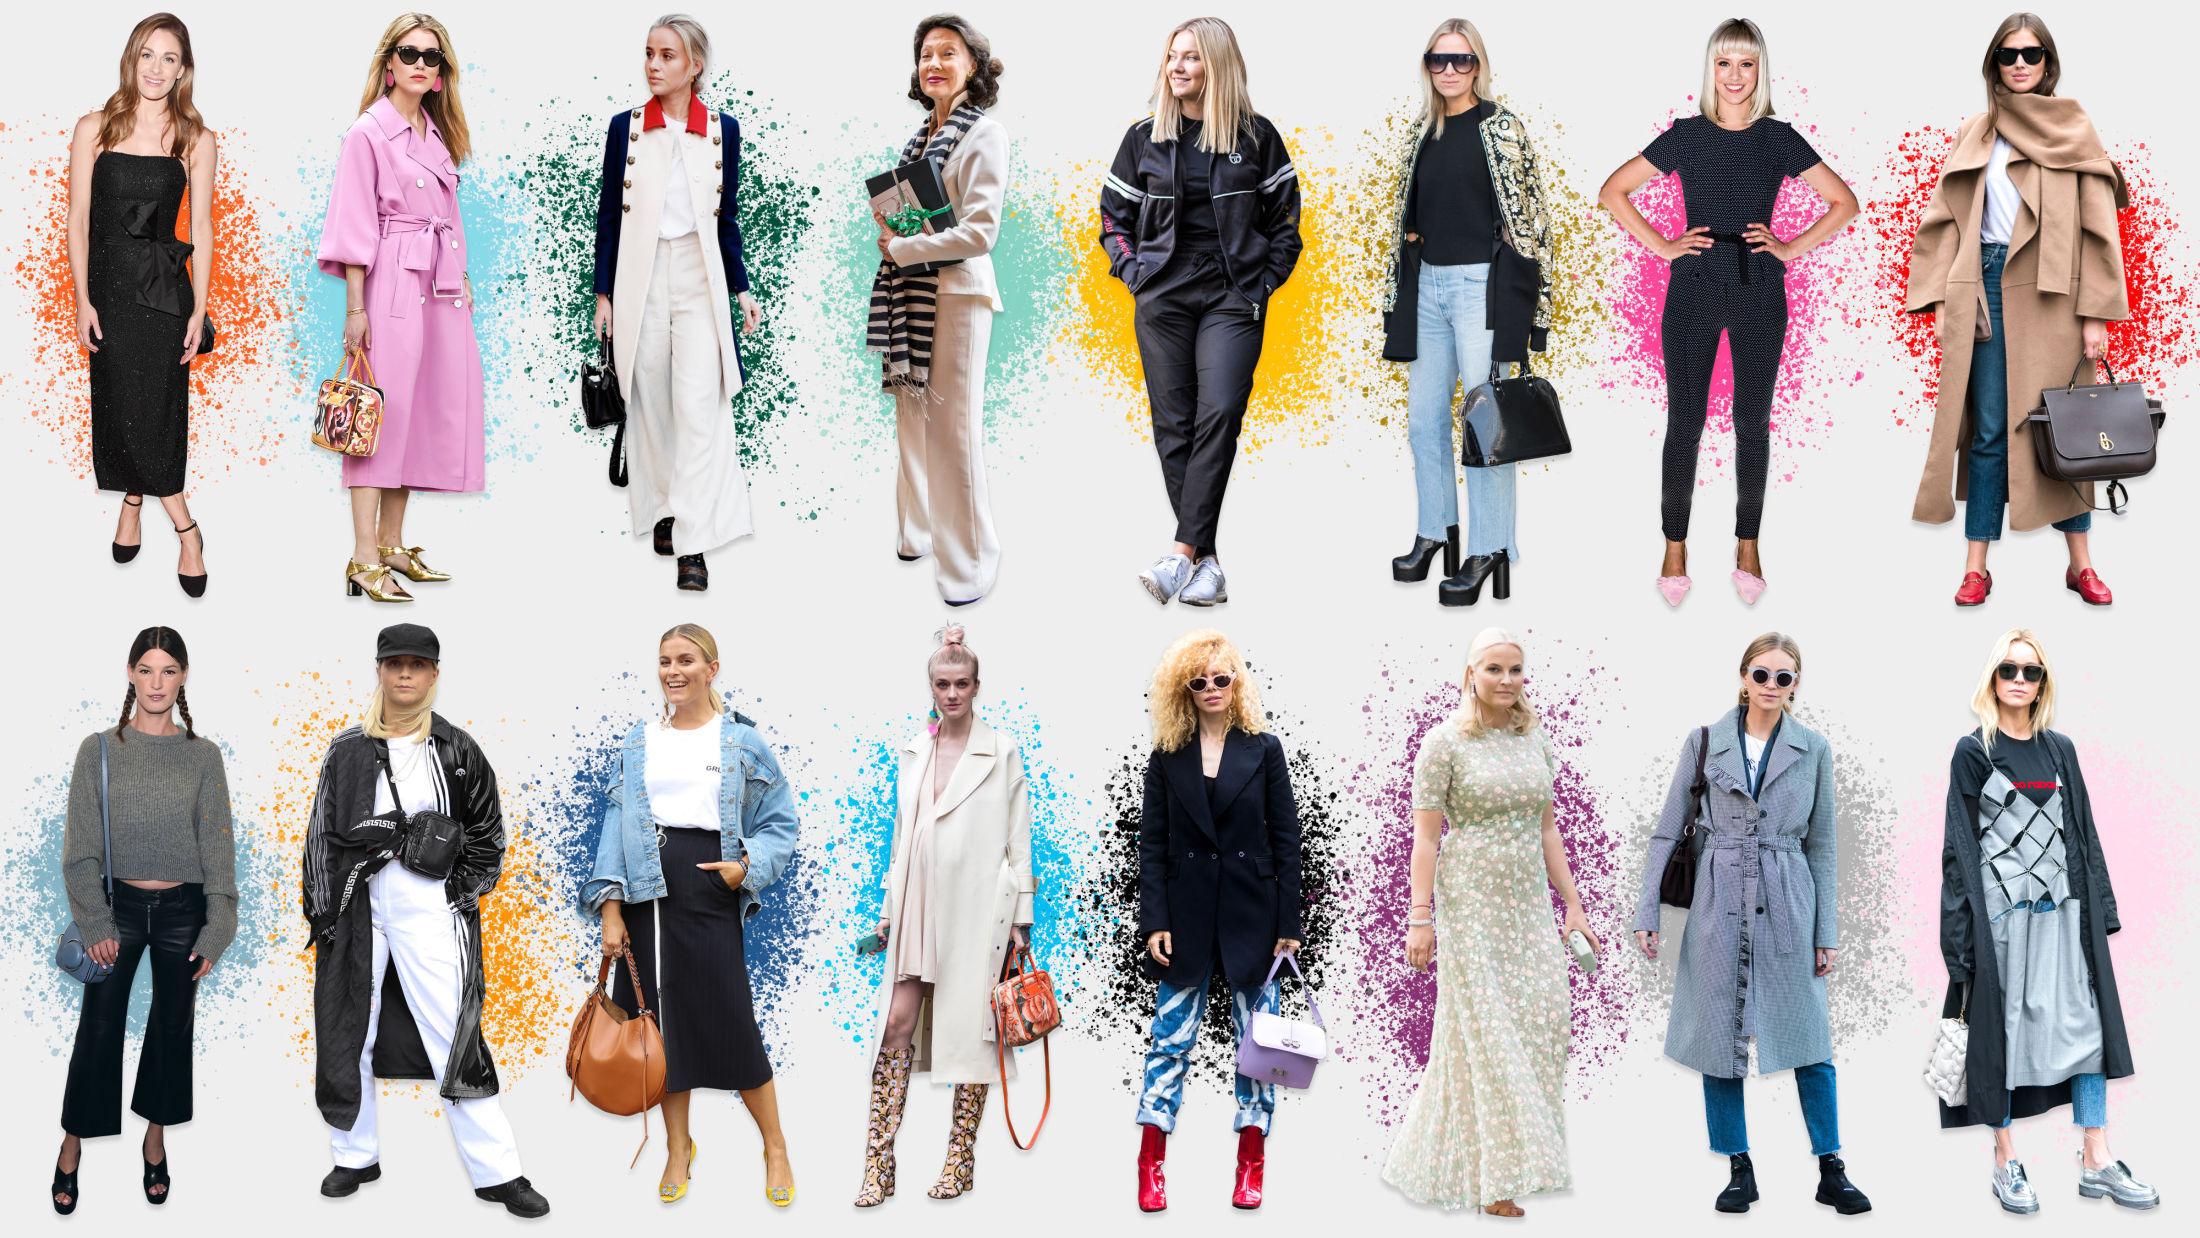 BEST KLEDD: Her er Norges best kledde kvinner samlet. Stem på dine favoritter i saken. Alle foto: Getty Images, NTB scanpix